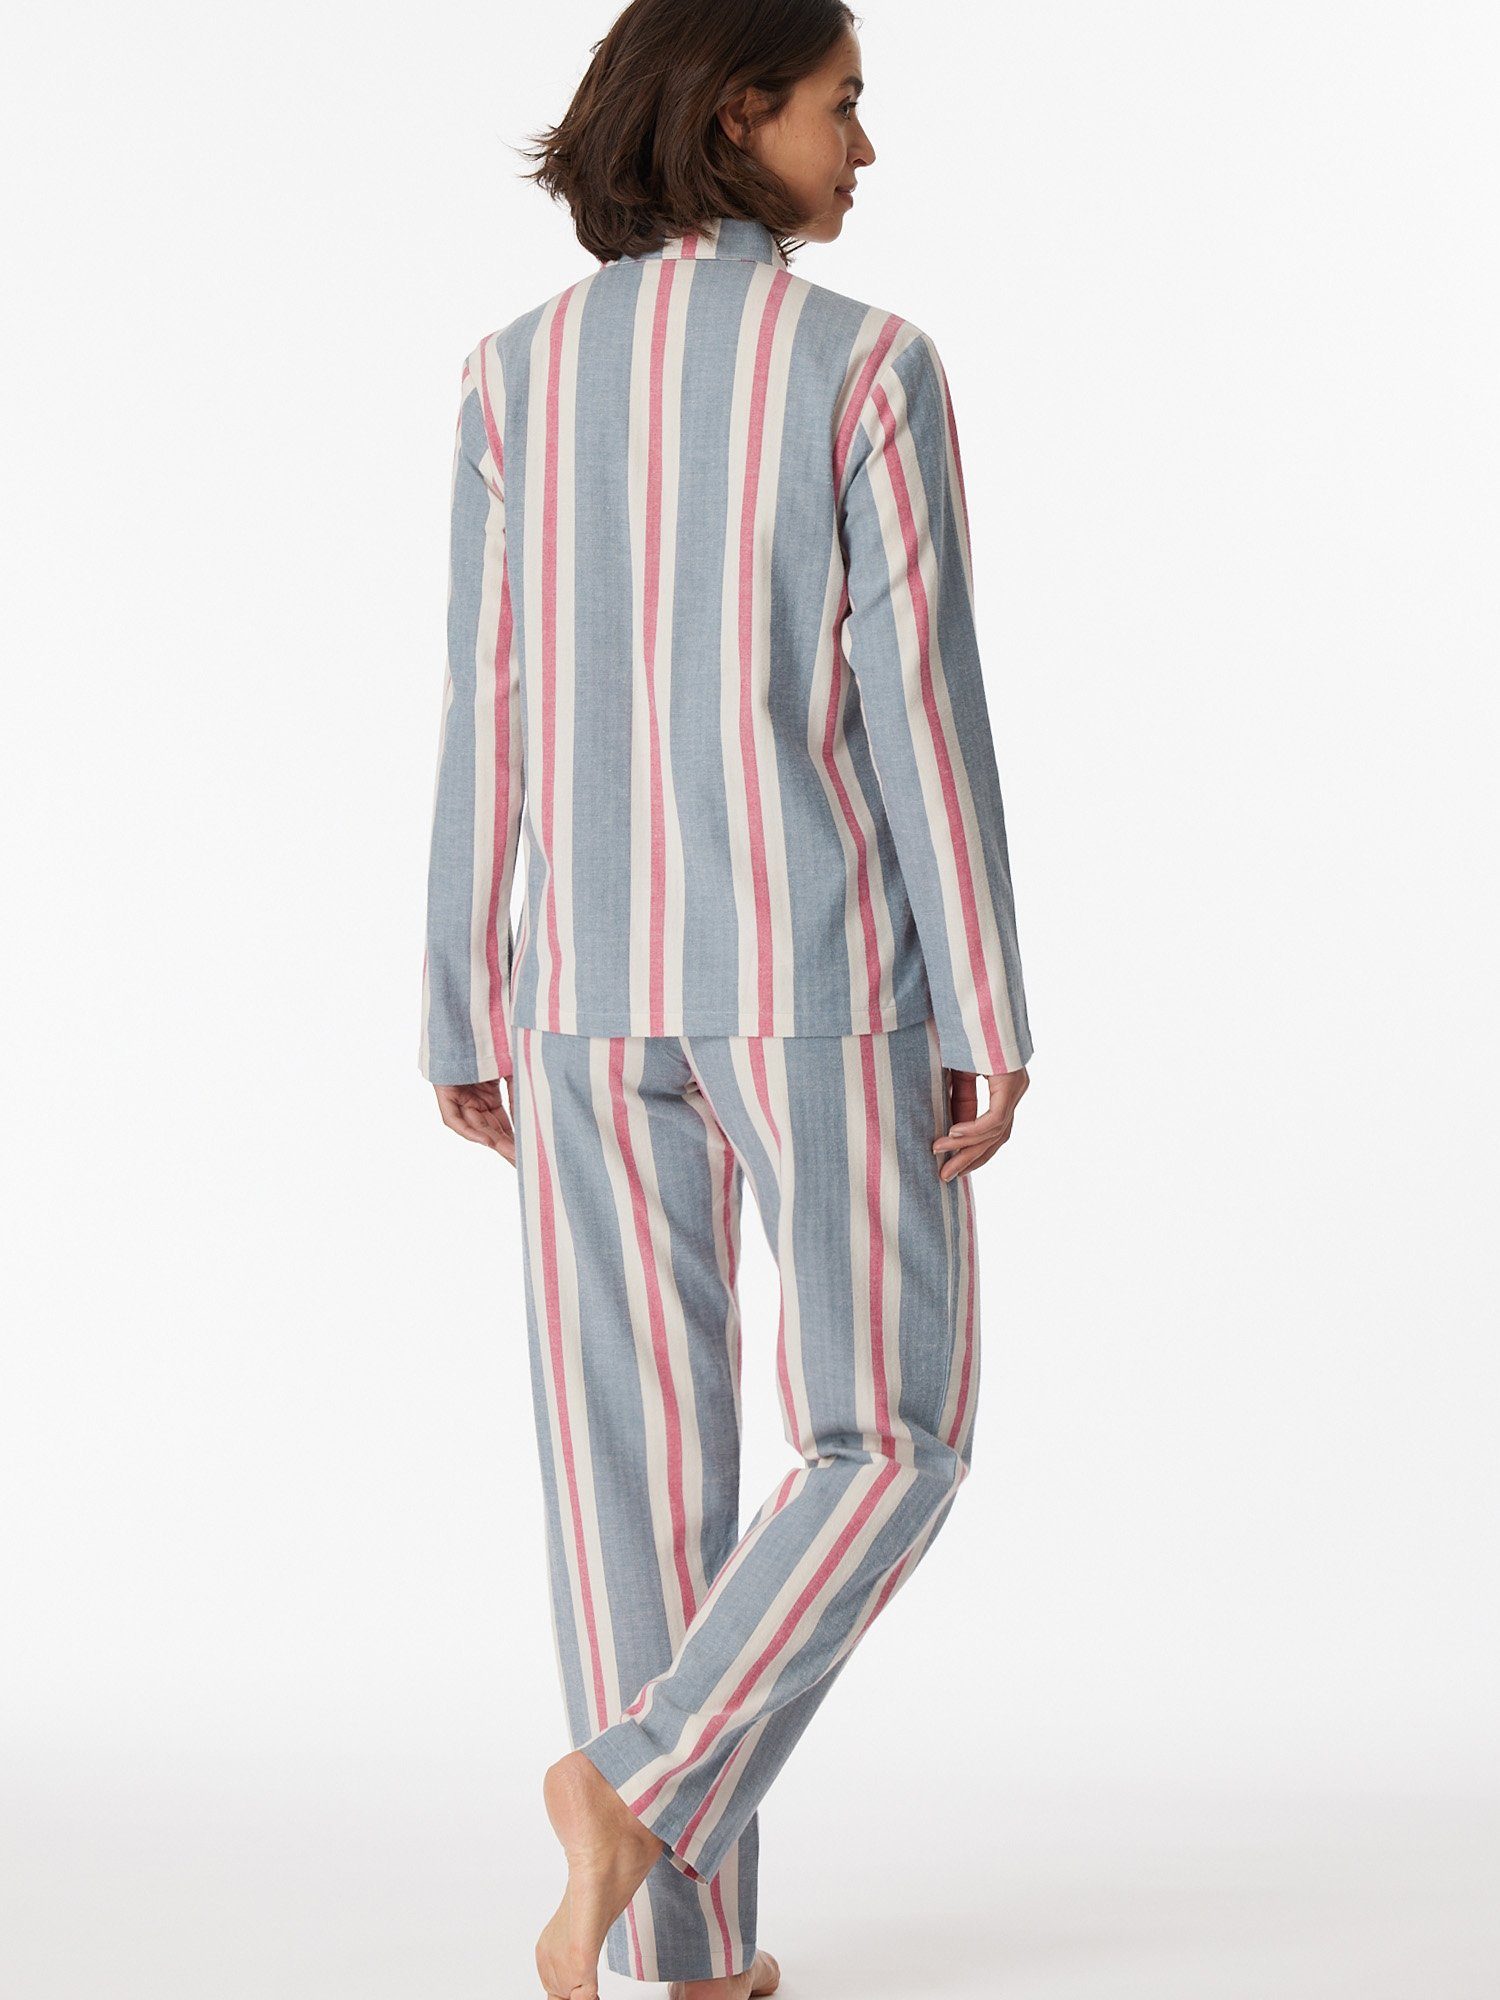 schlafmode Pyjama Premium multicolor Selected Schiesser pyjama schlafanzug